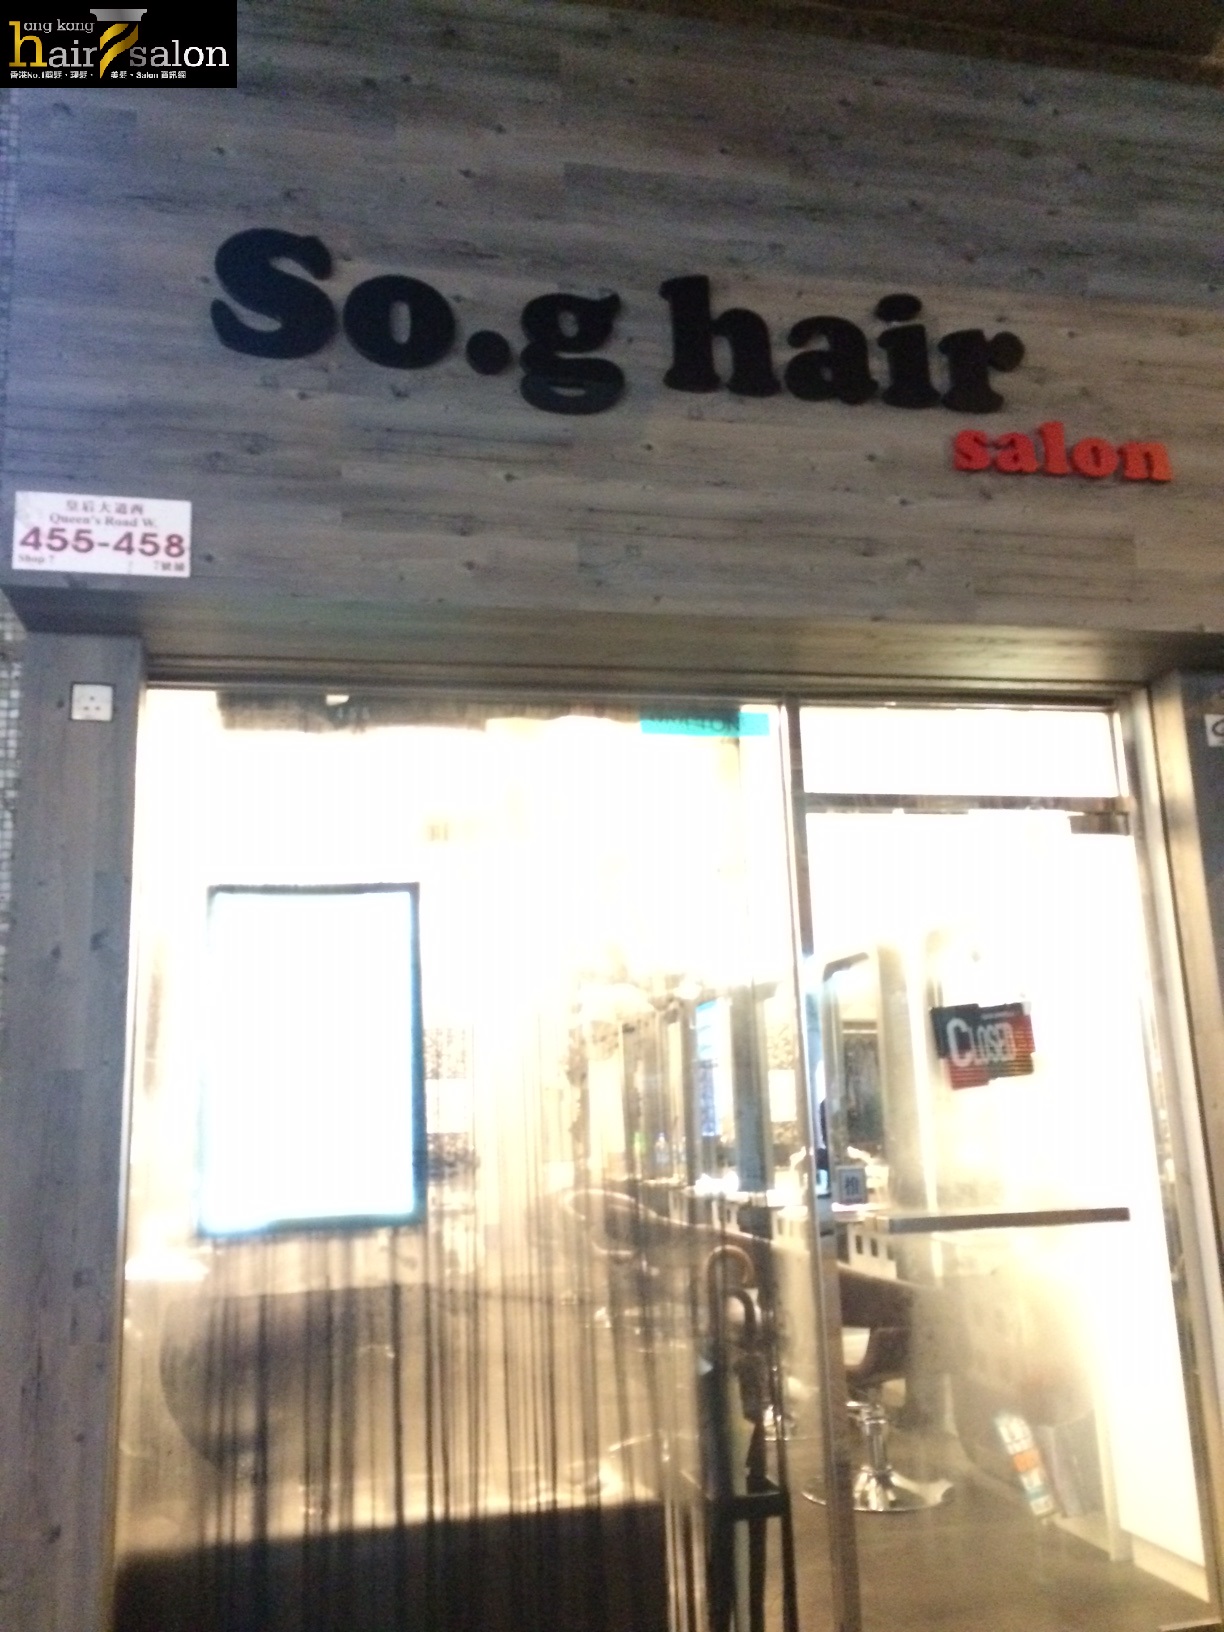 髮型屋: So.g Hair Salon